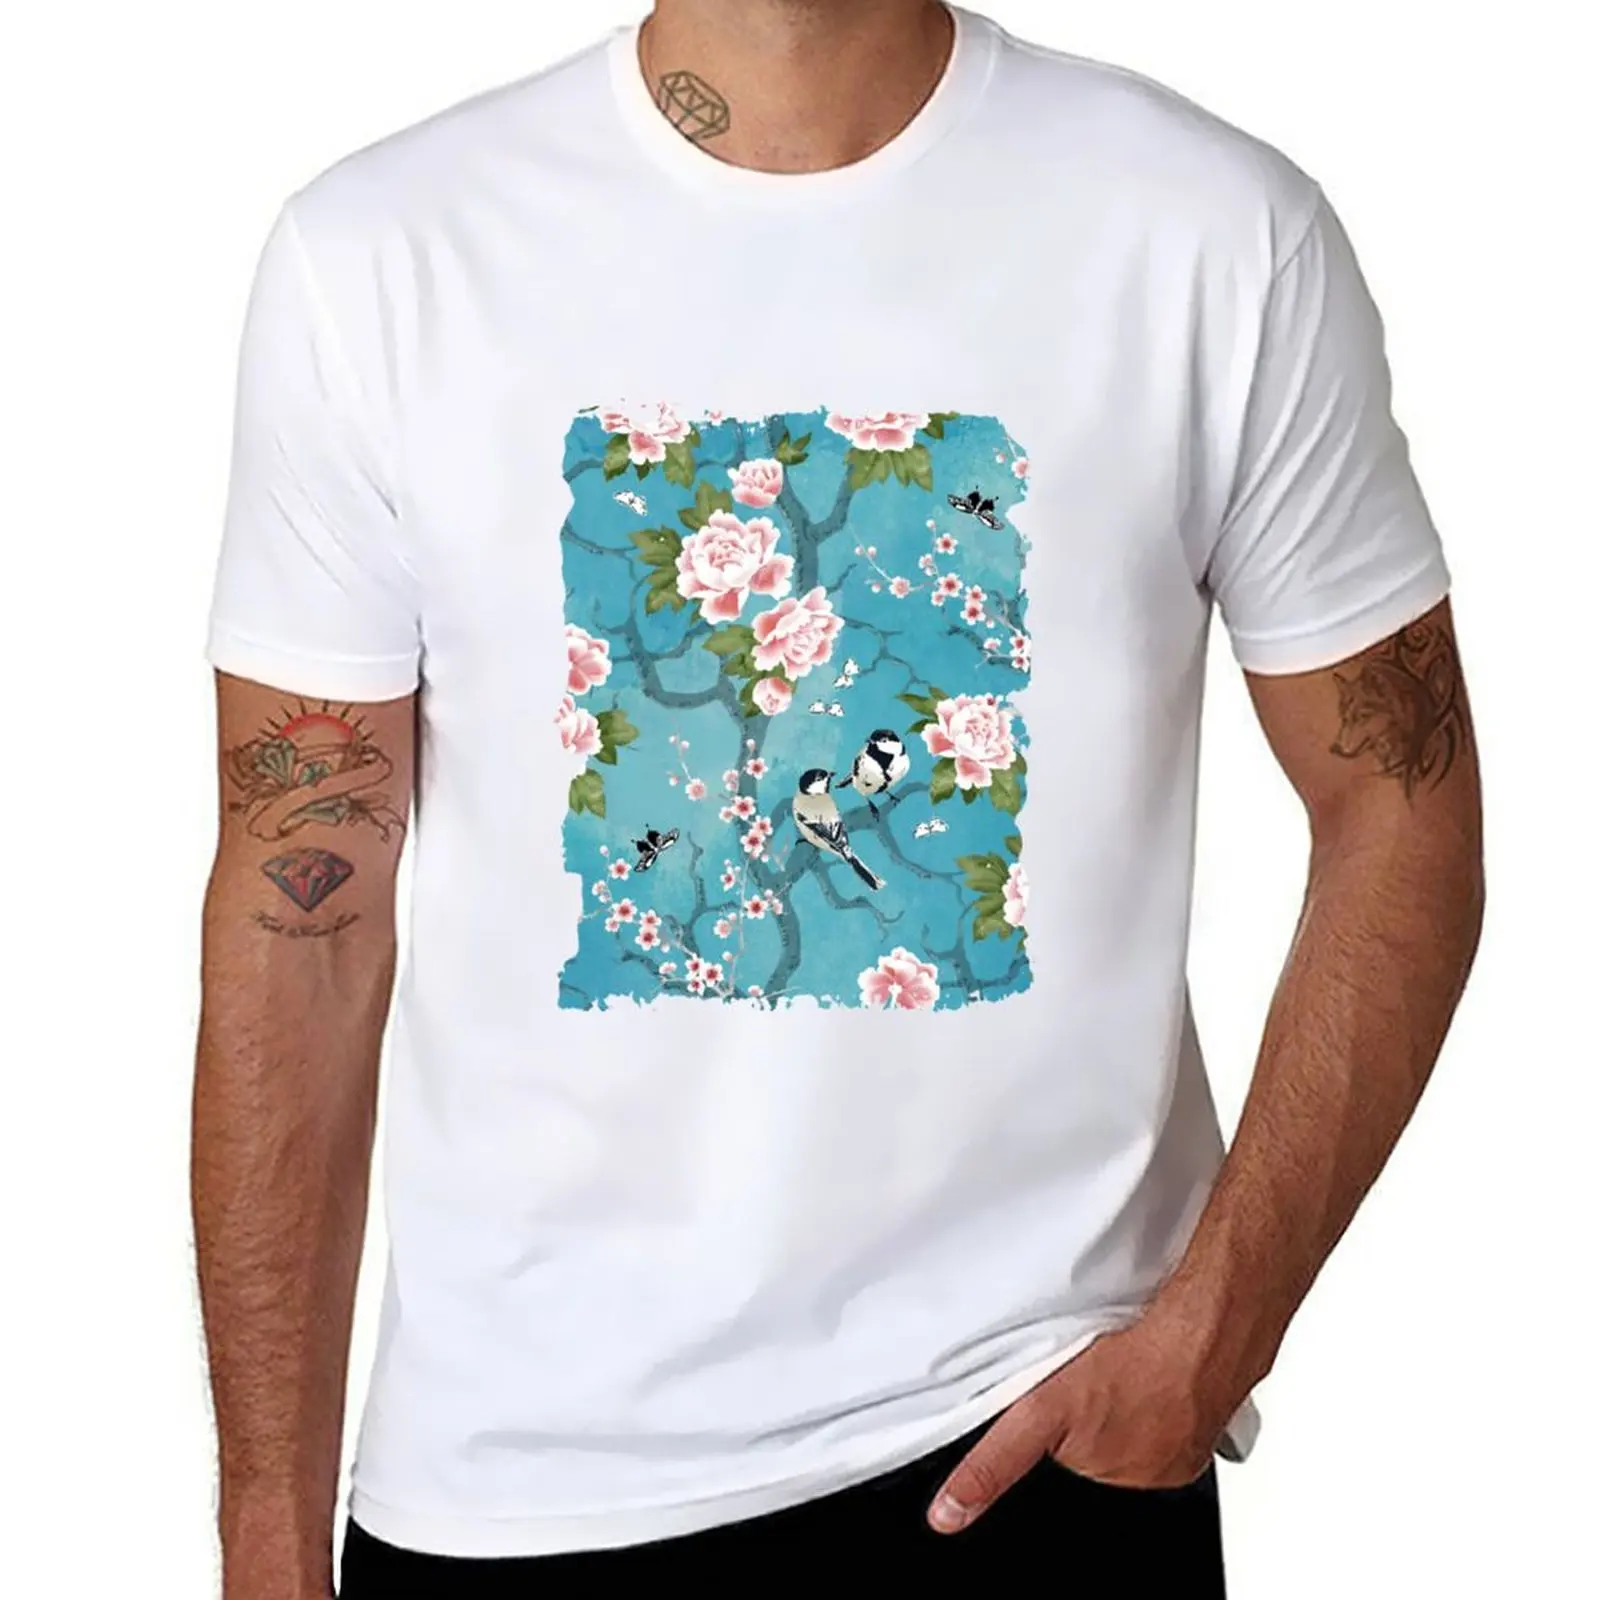 Новая футболка Chinoiserie birds в бирюзово-синем цвете, футболки для любителей спорта, футболка для мальчика, блузка, милая одежда, мужские хлопковые футболки